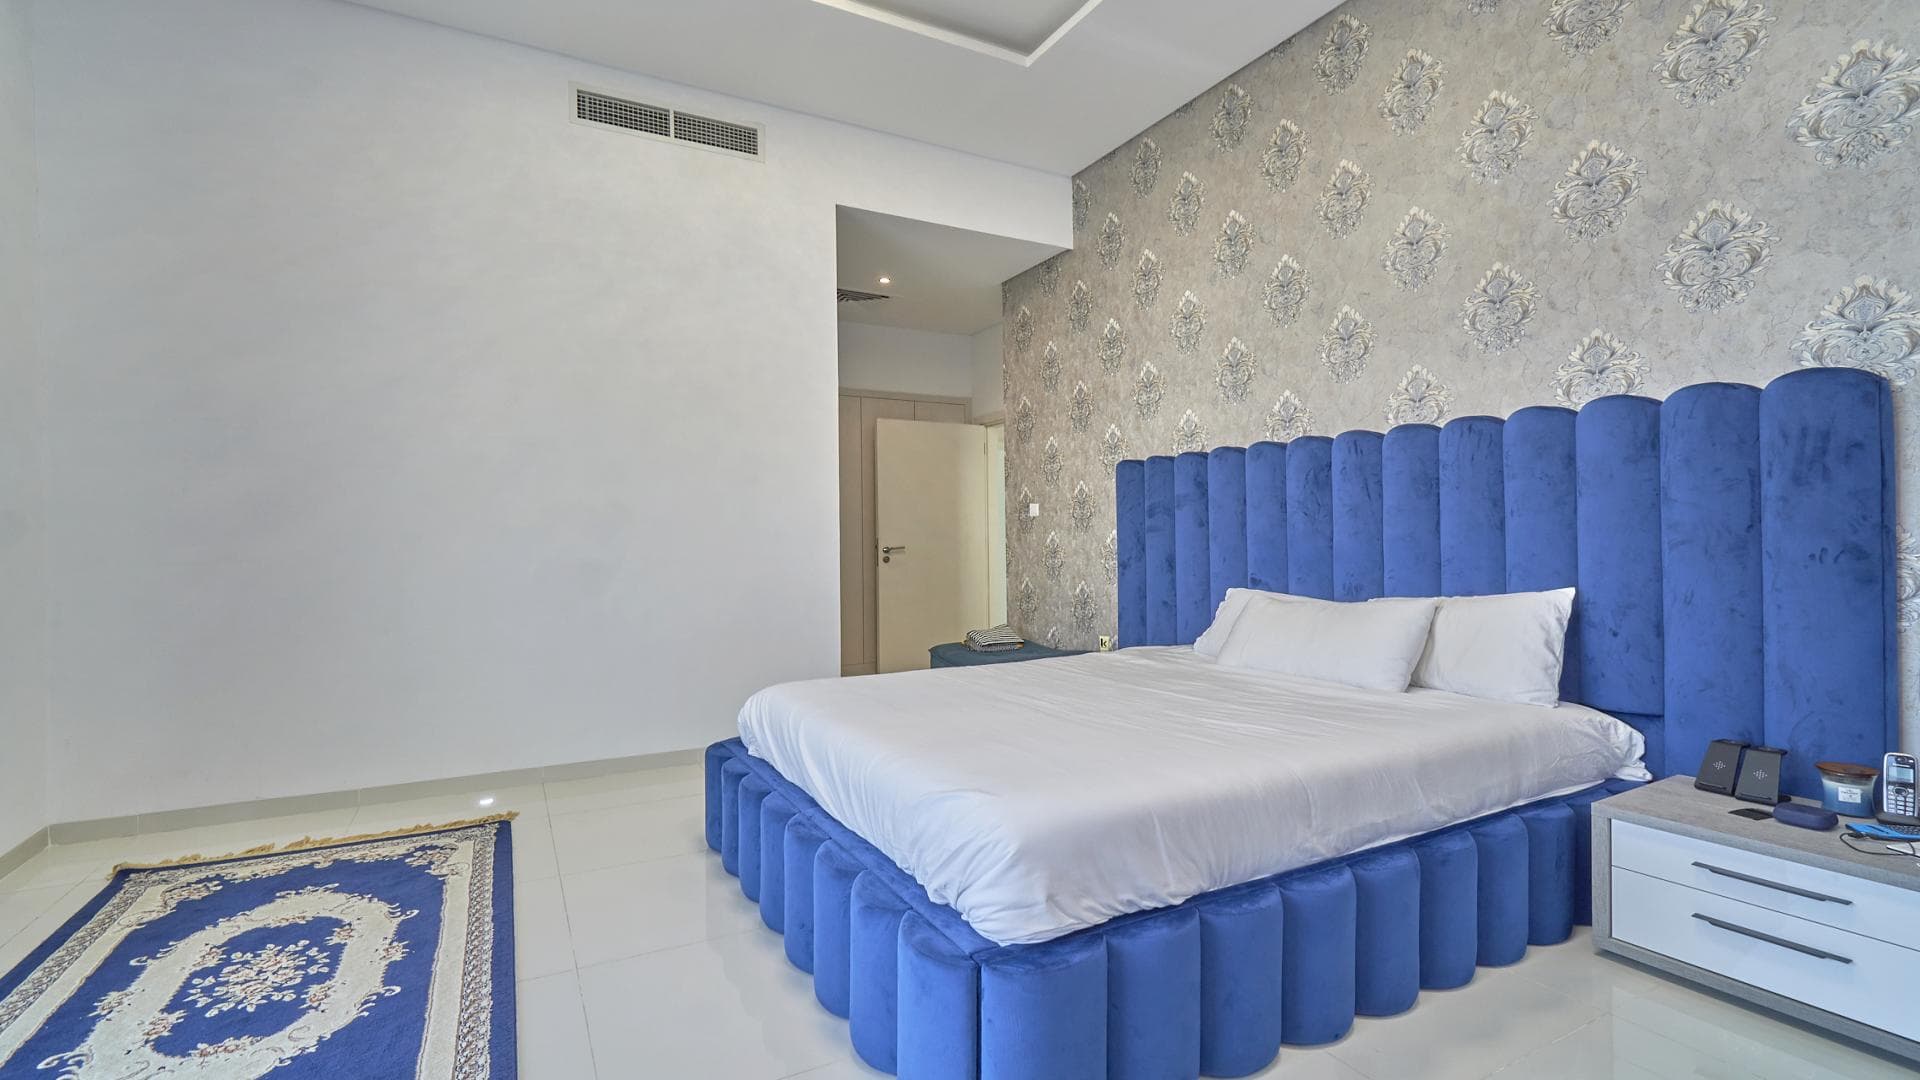 5 Bedroom Villa For Rent Rose 1 Lp35480 2d0d6e79d983e400.jpg